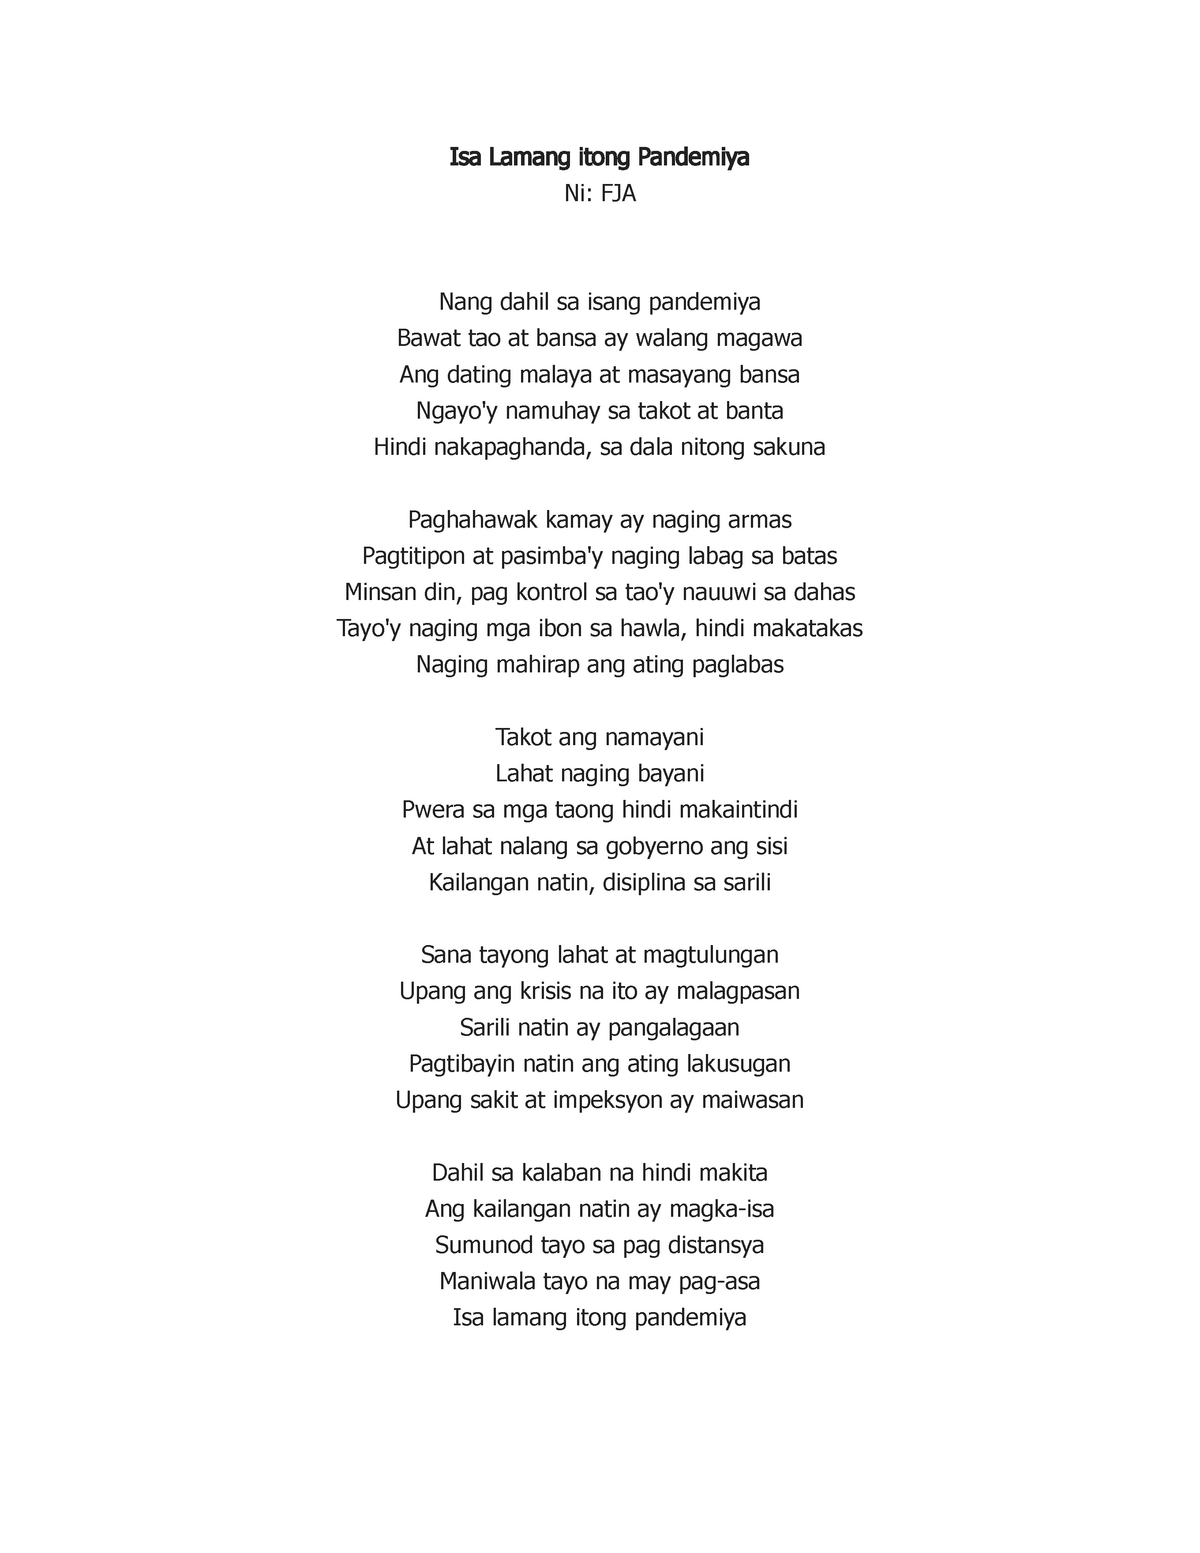 Pandemya tula - A poem - Isa Lamang itong Pandemiya Ni: FJA Nang dahil